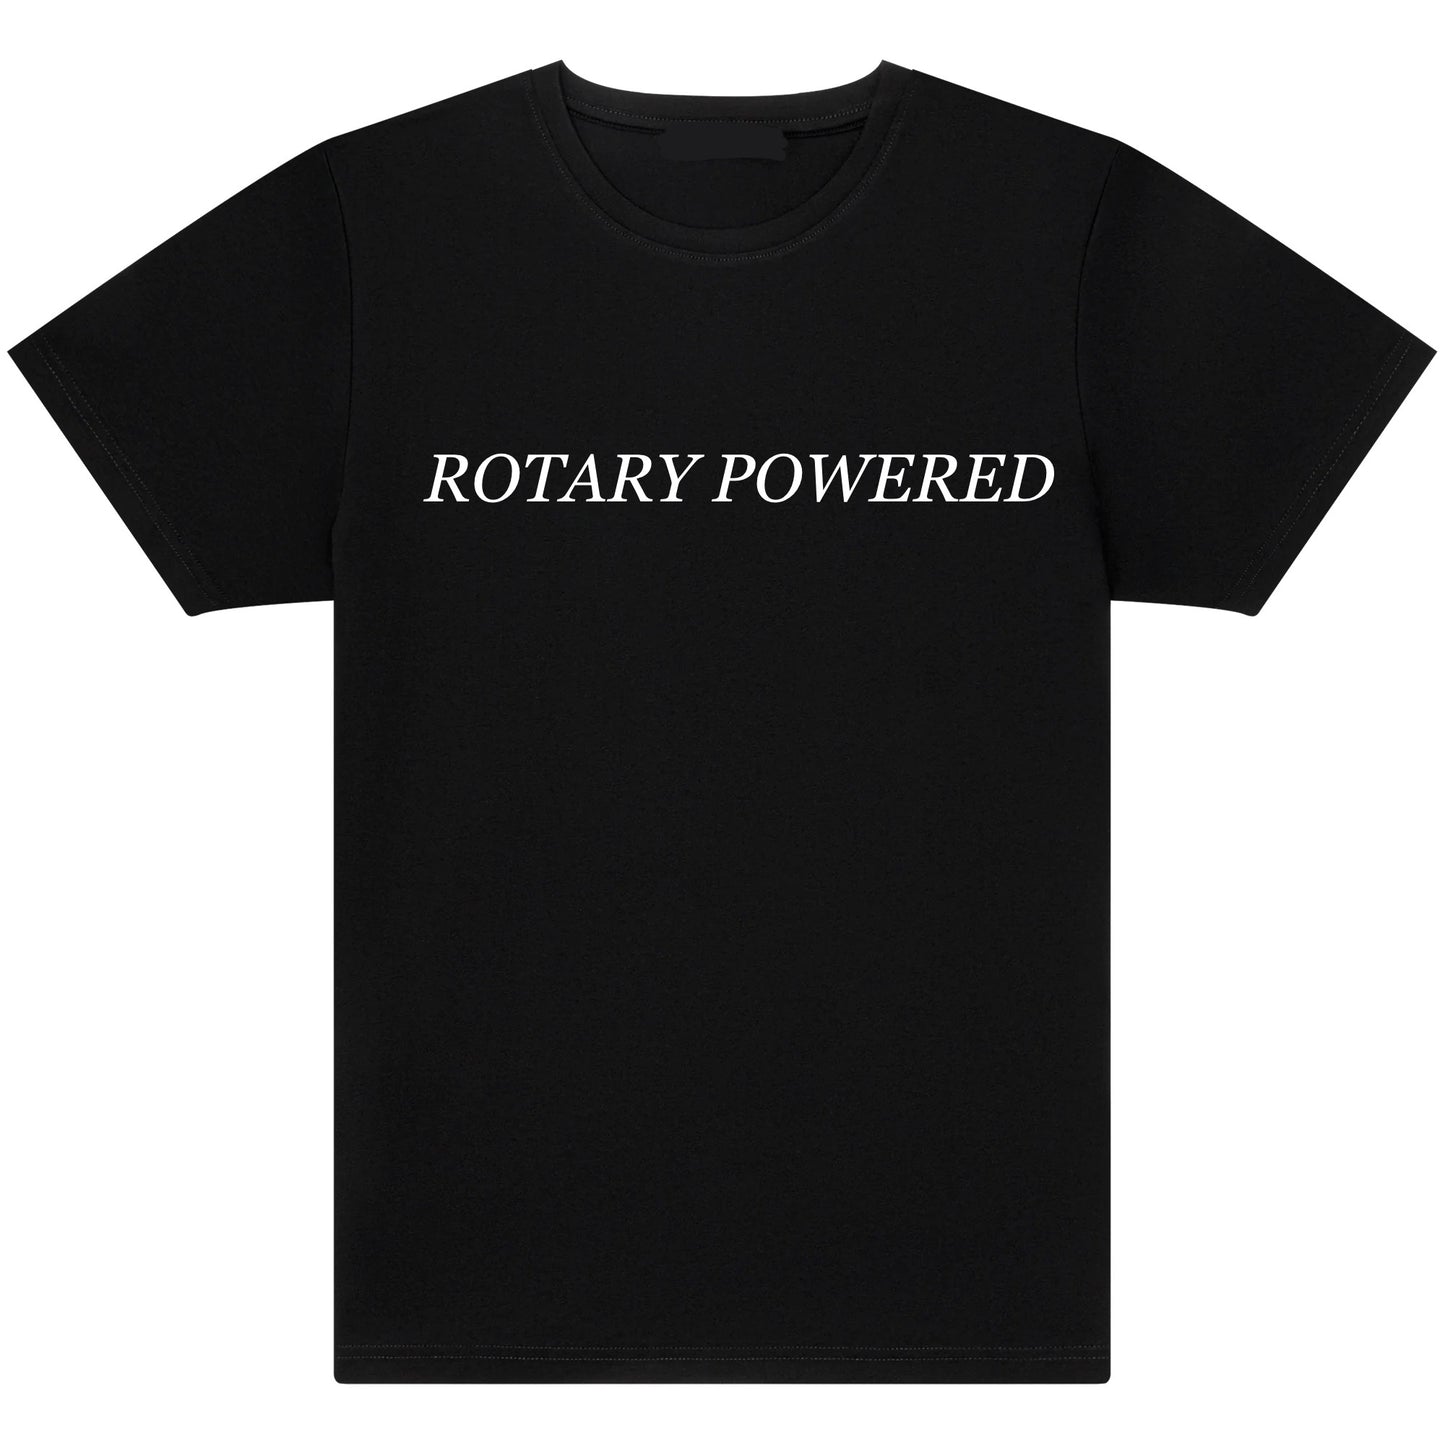 Rotary powered T- shirt